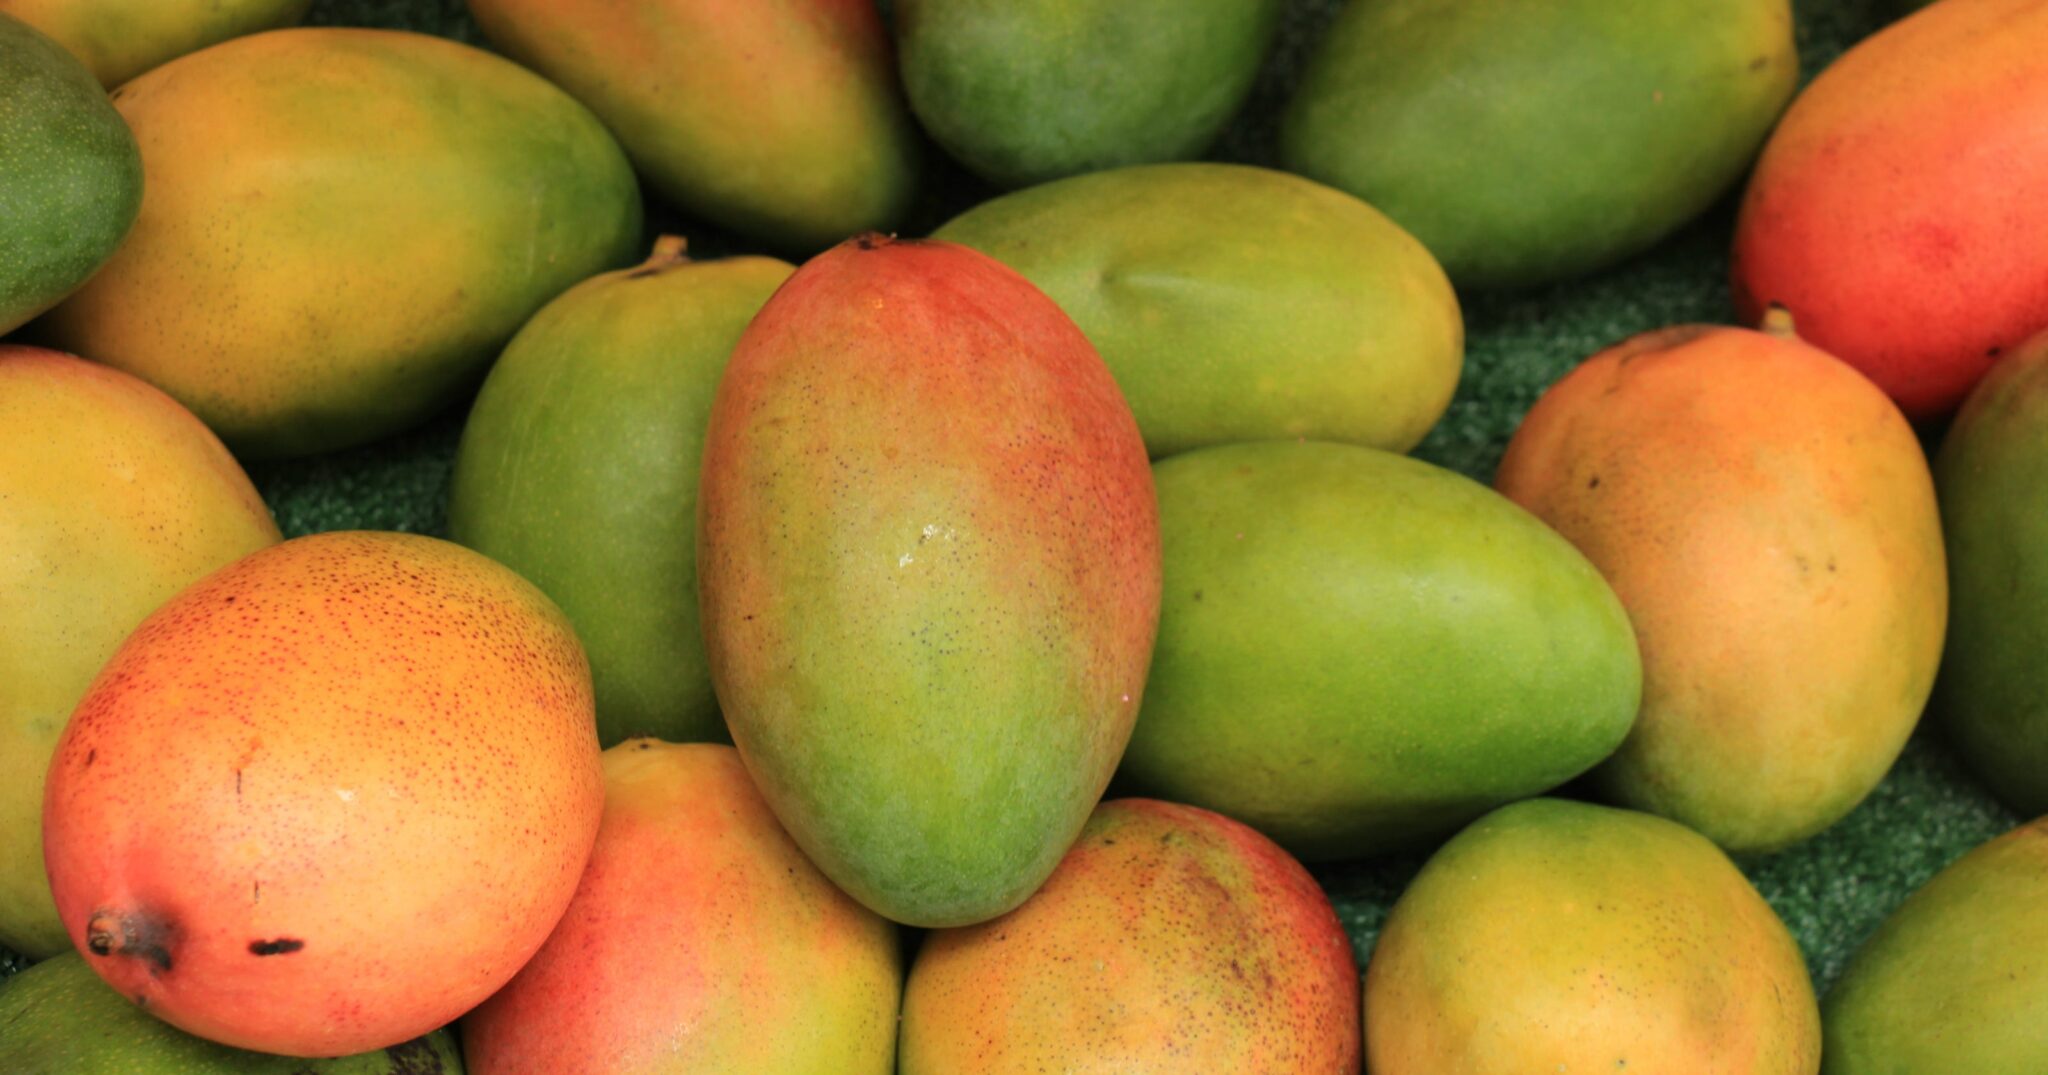 sixteen-varieties-of-mangoes-including-three-gi-certified-varieties